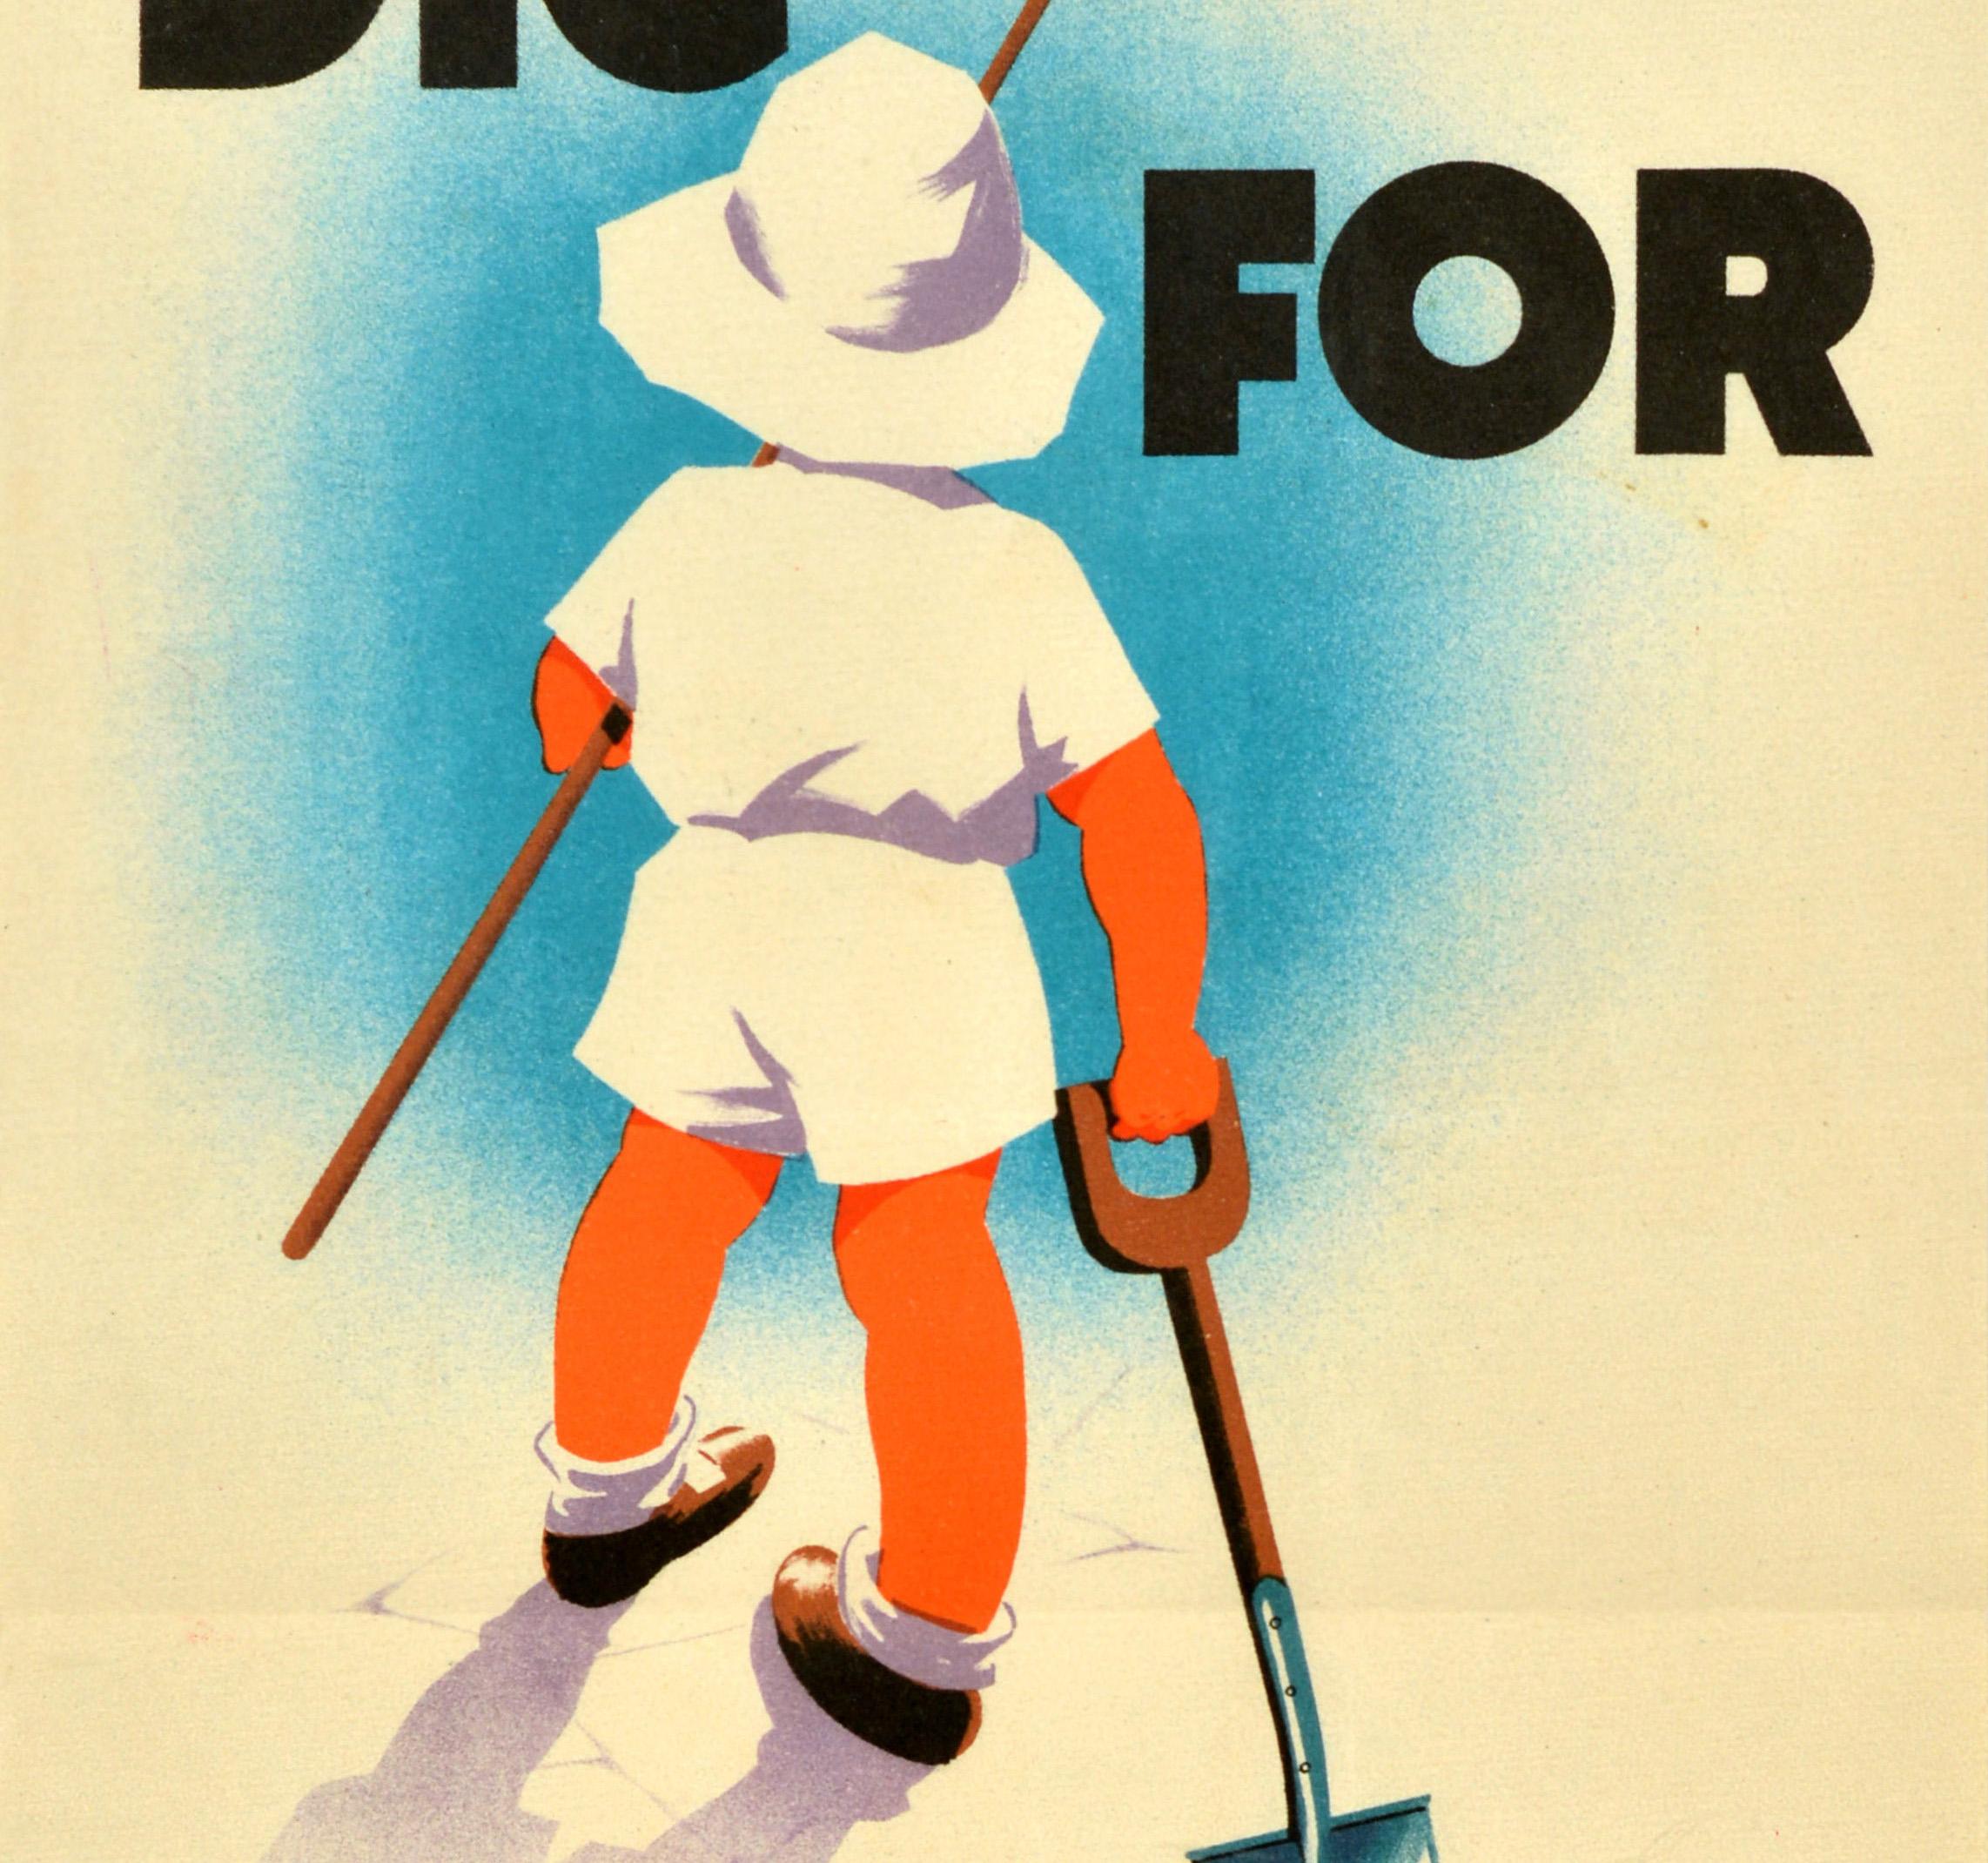 Originales Propagandaplakat für die Heimatfront des Zweiten Weltkriegs - Dig for Victory - mit einer ikonischen Illustration eines Kindes mit weißem Sonnenhut, das eine Hacke und eine Schaufel in der Hand hält, um bei der Gartenarbeit und der